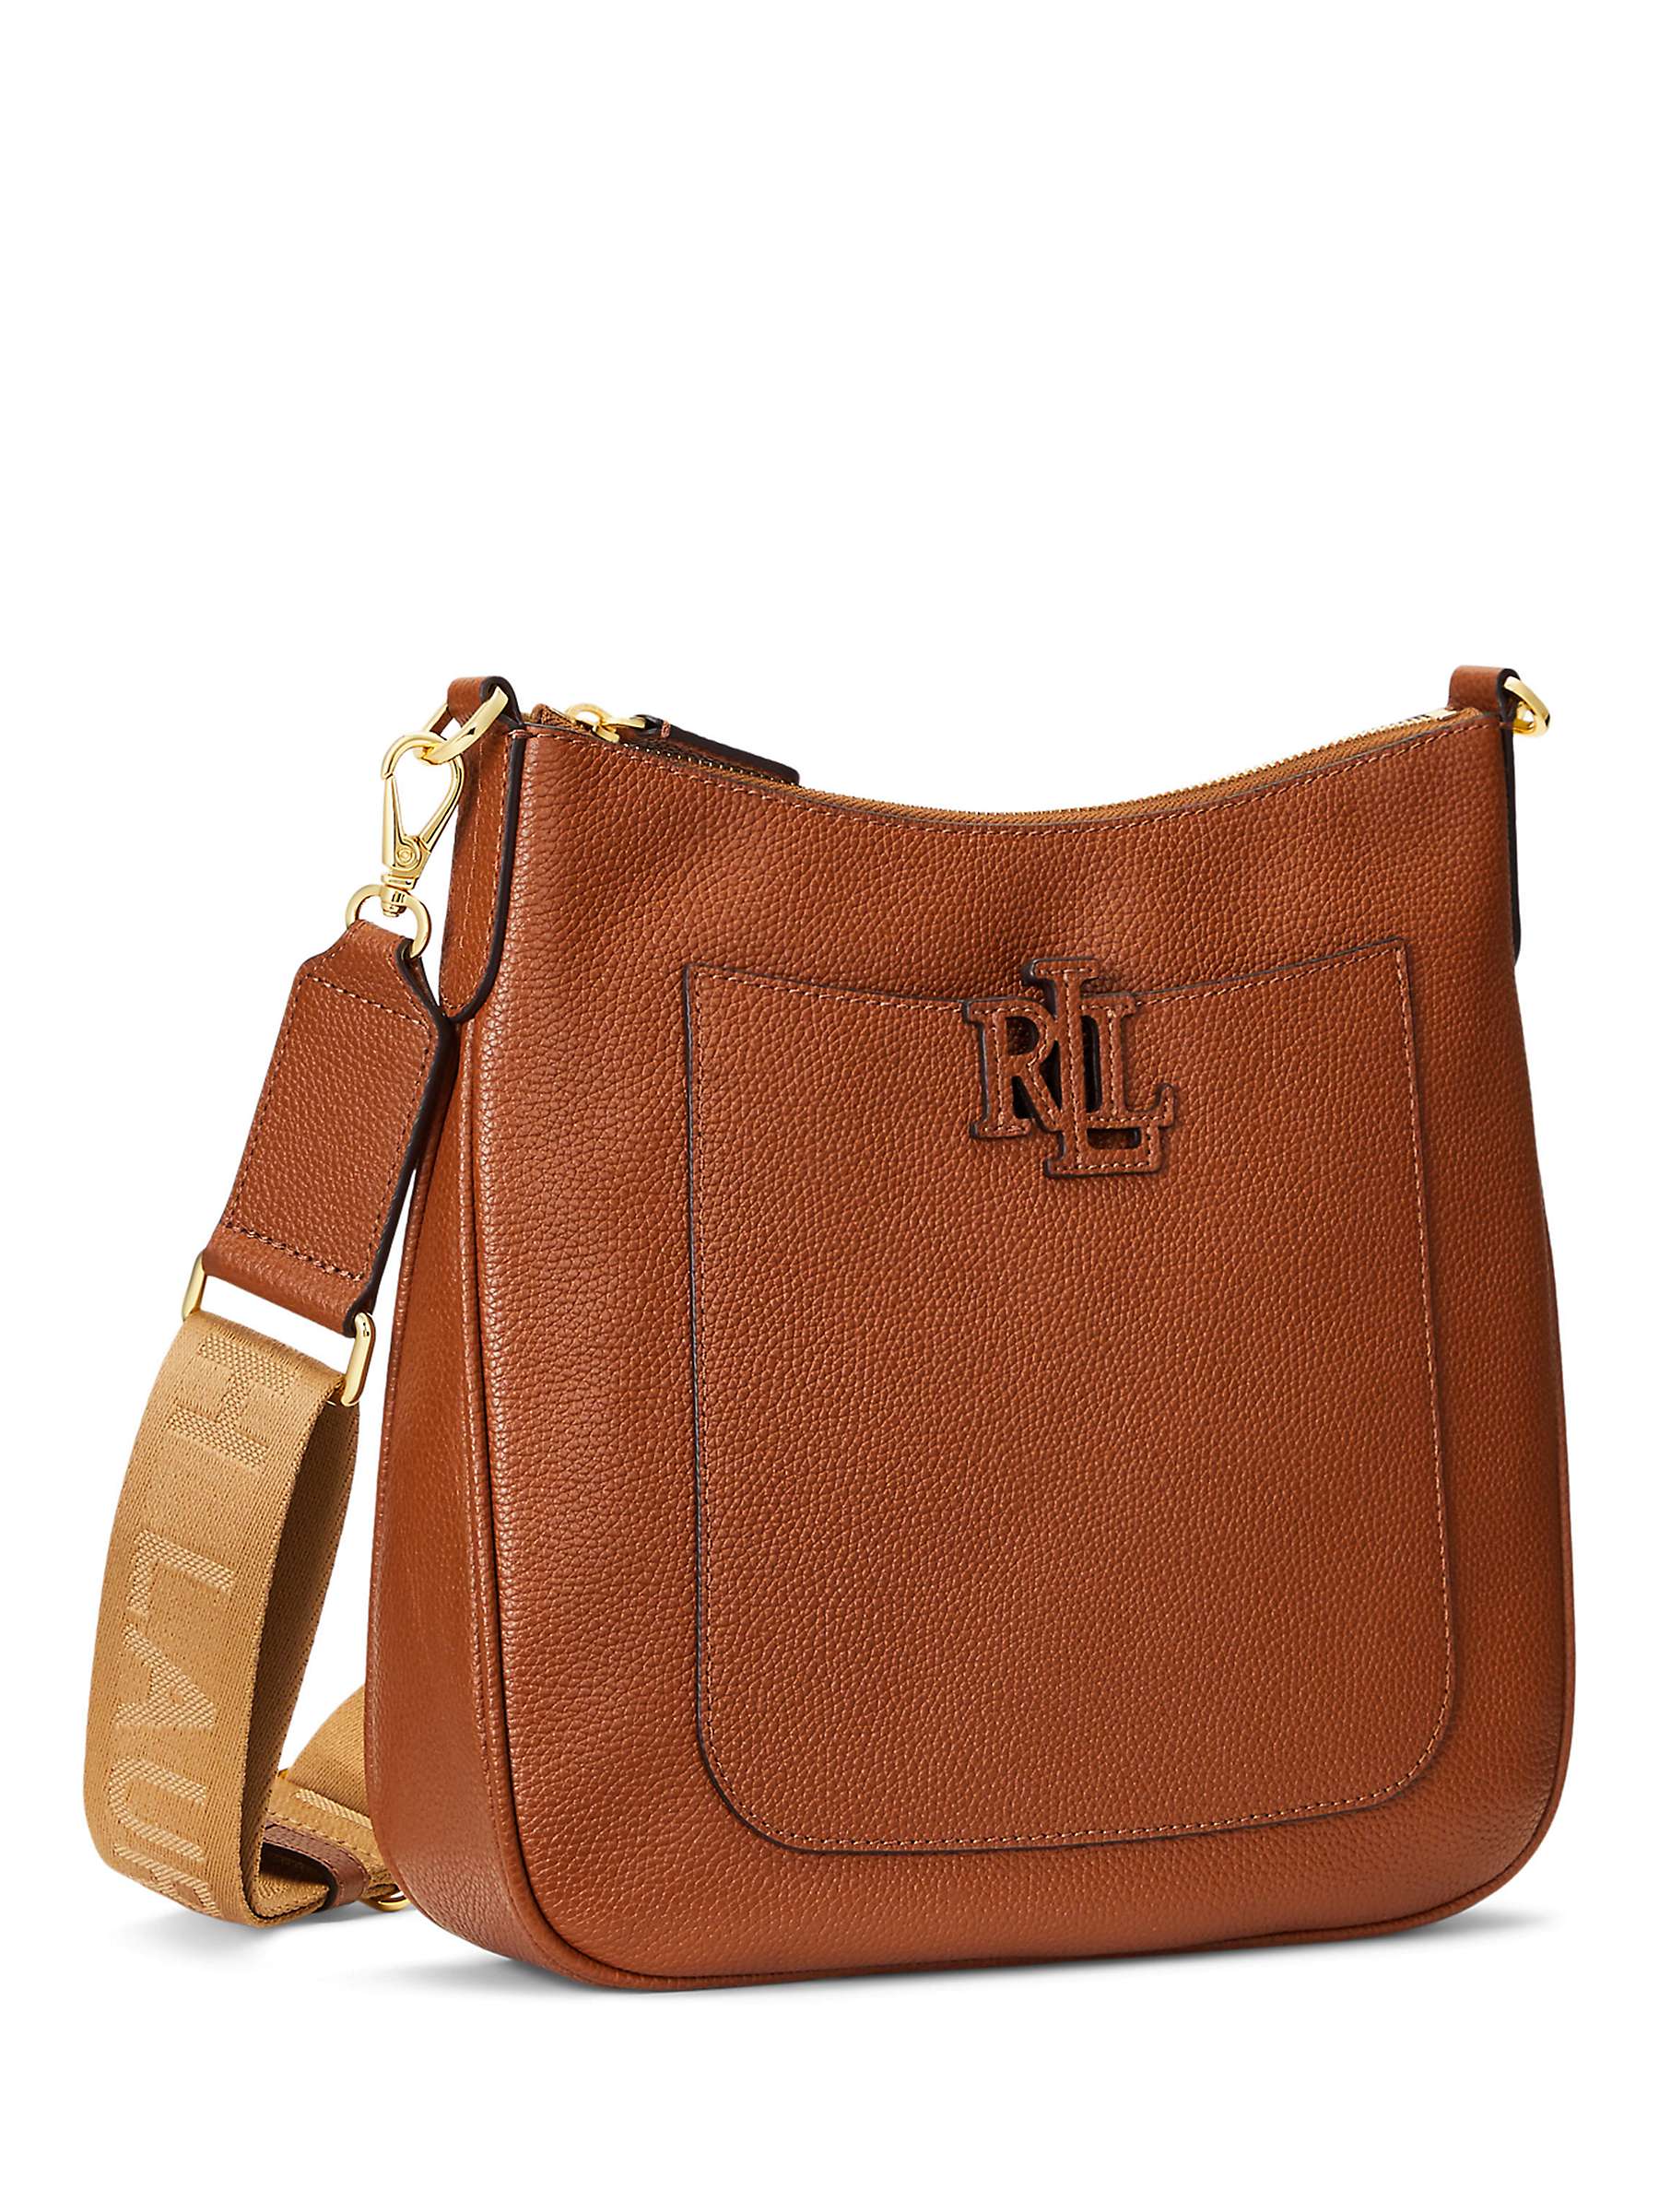 Buy Lauren Ralph Lauren Cameryn 27 Crossbody Bag Online at johnlewis.com